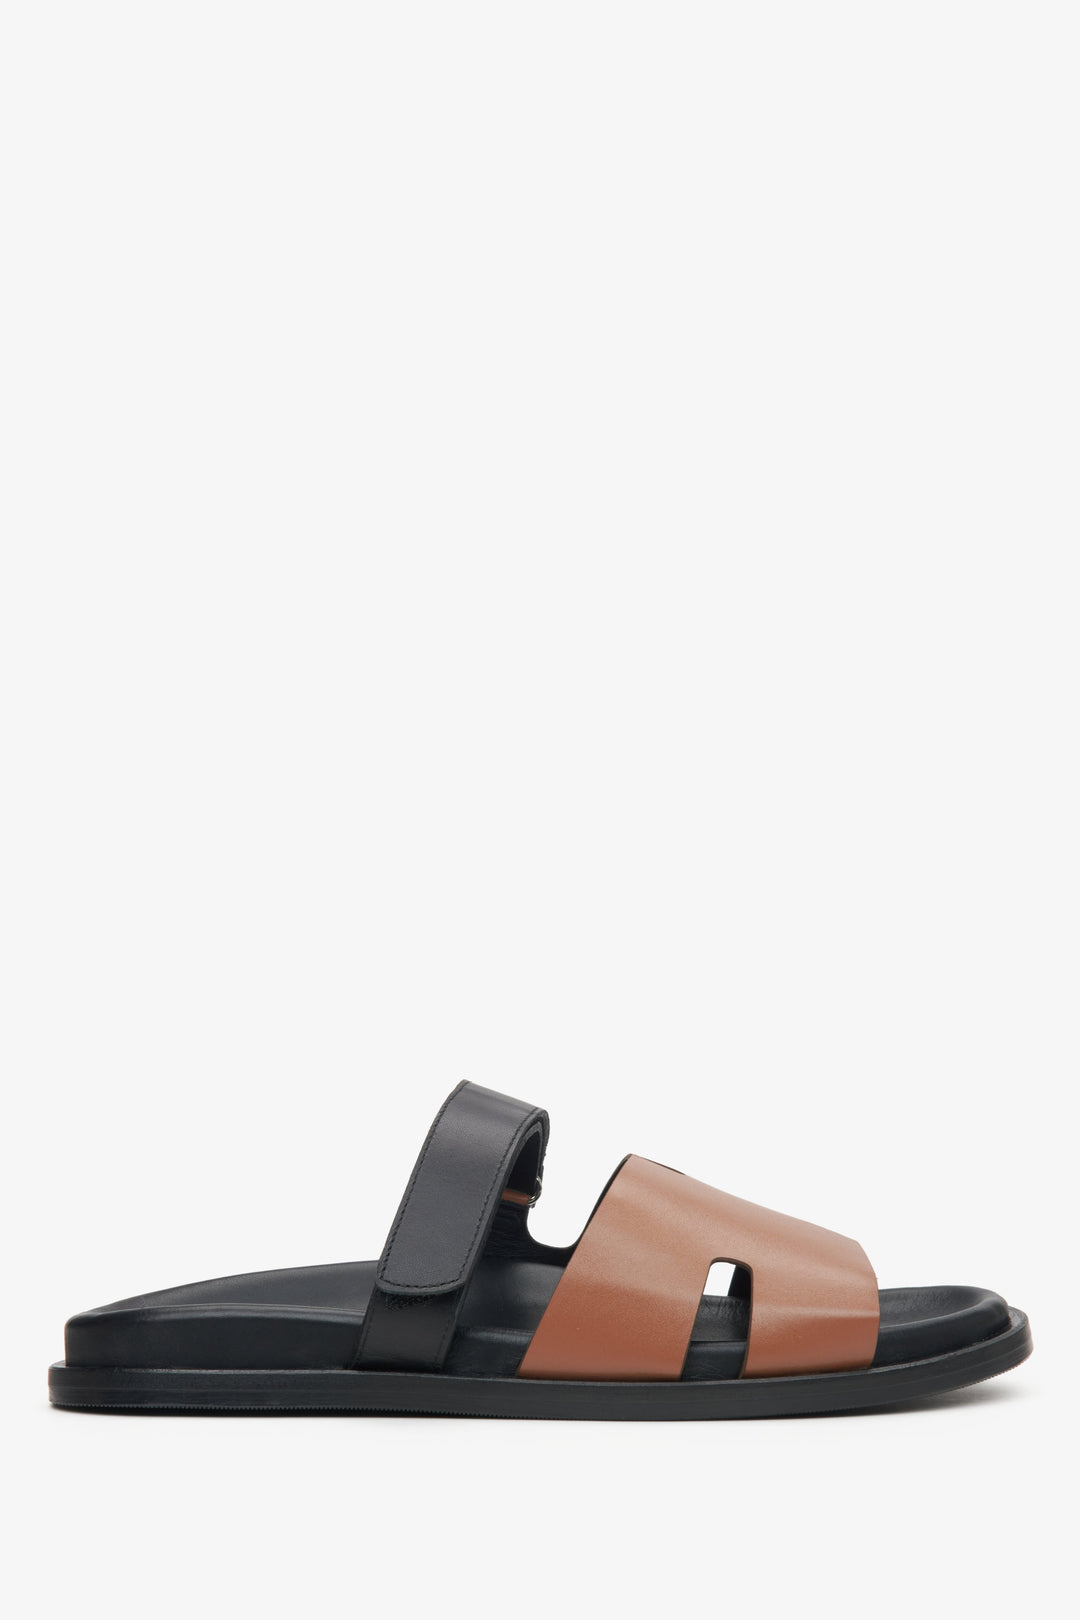 Women's Brown & Black Leather Slide Sandals Estro ER00115100